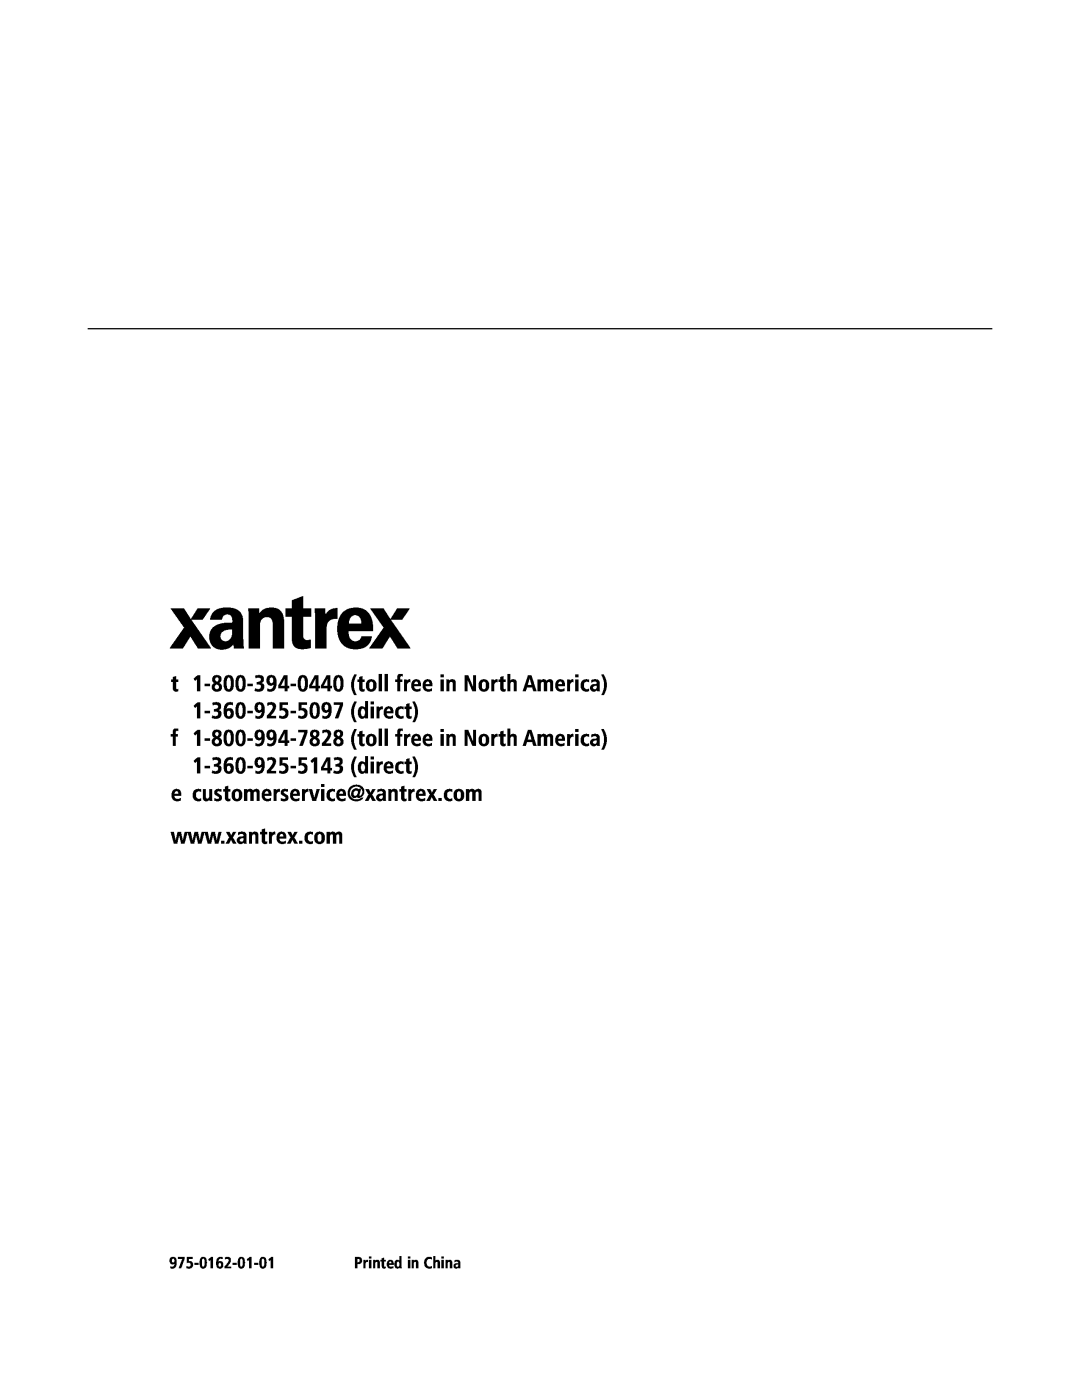 Xantrex Technology 400R f 1-800-994-7828 toll free in North America 1-360-925-5143 direct, e customerservice@xantrex.com 